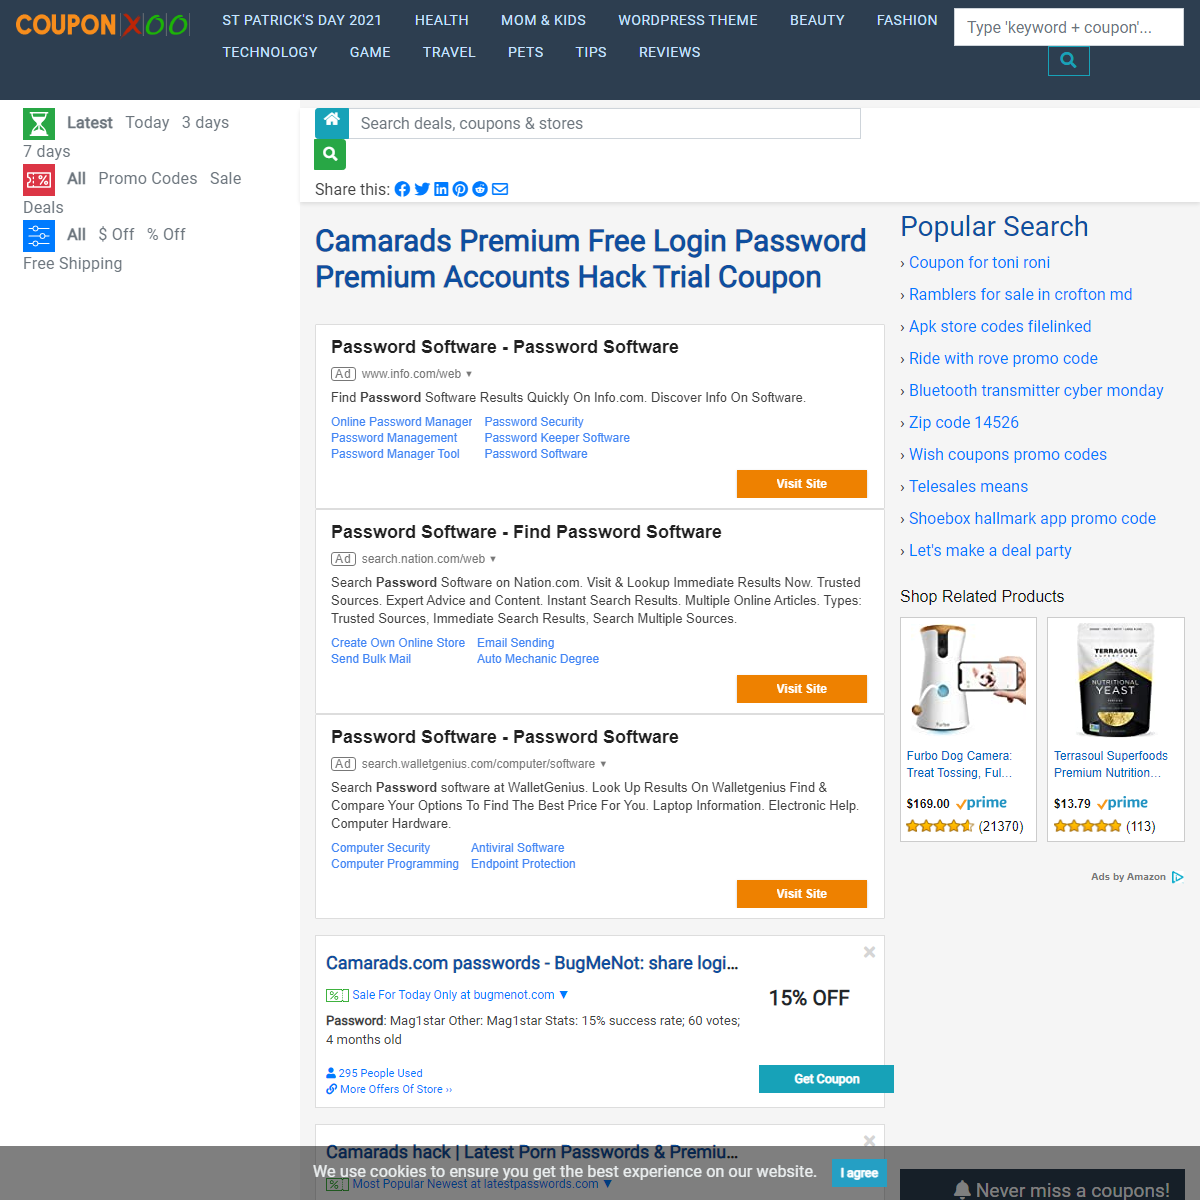 Camarads Premium Free Login Password Premium Accounts Hack Trial Coupon - 03-2021